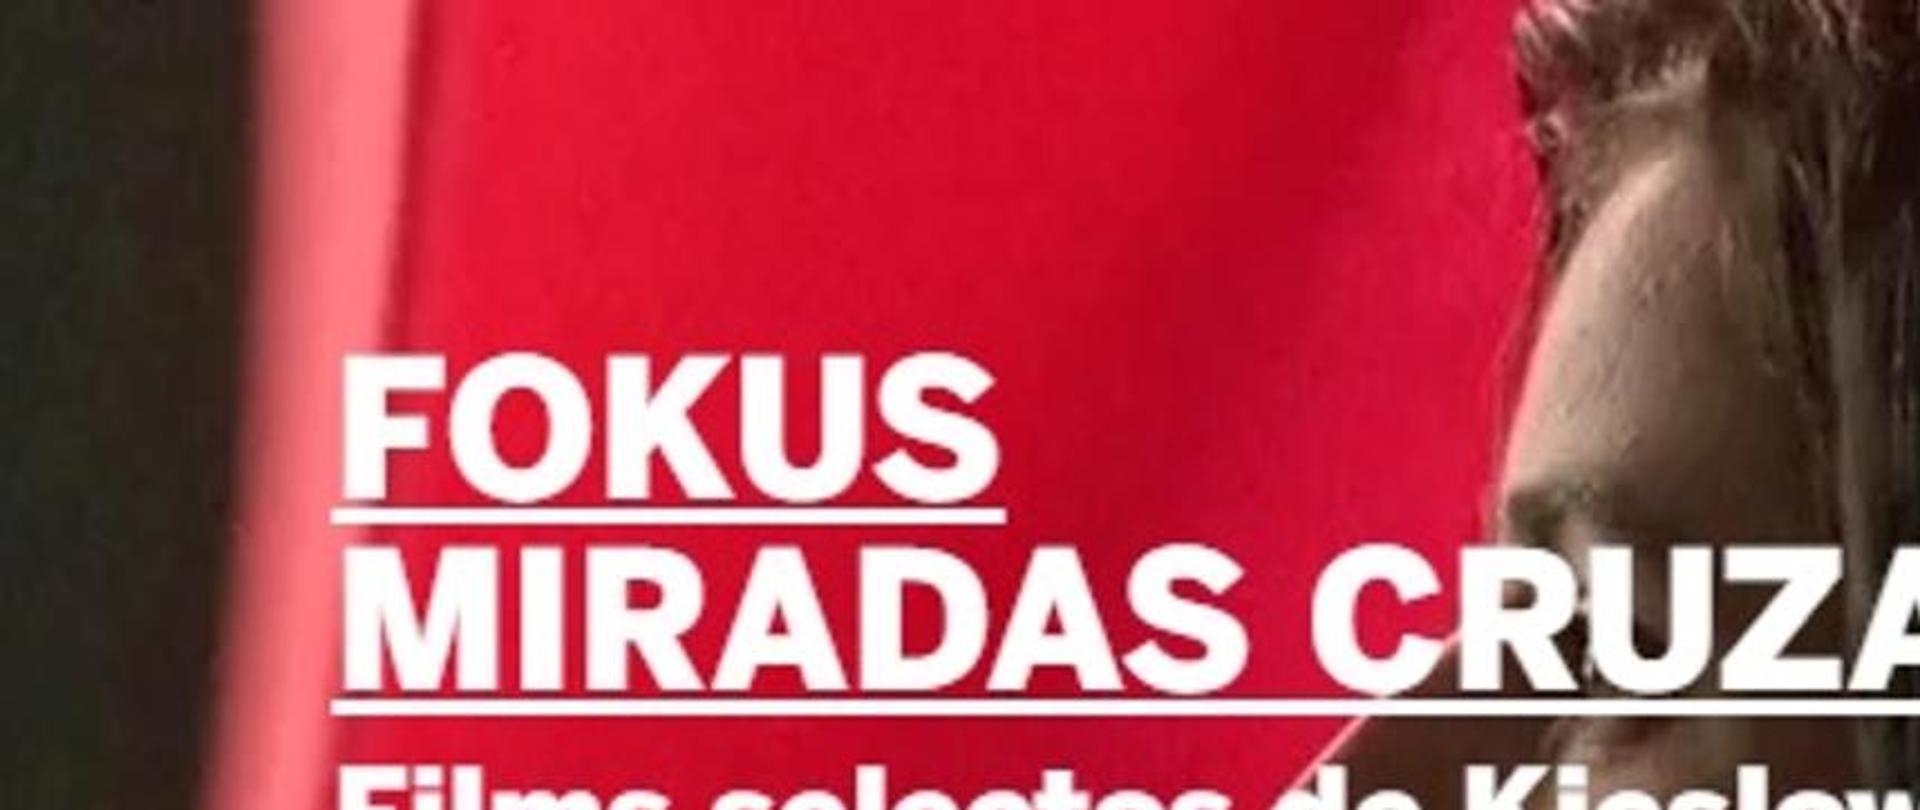 FOKUS Miradas Cruzadas - Festiwal Kieślowskiego